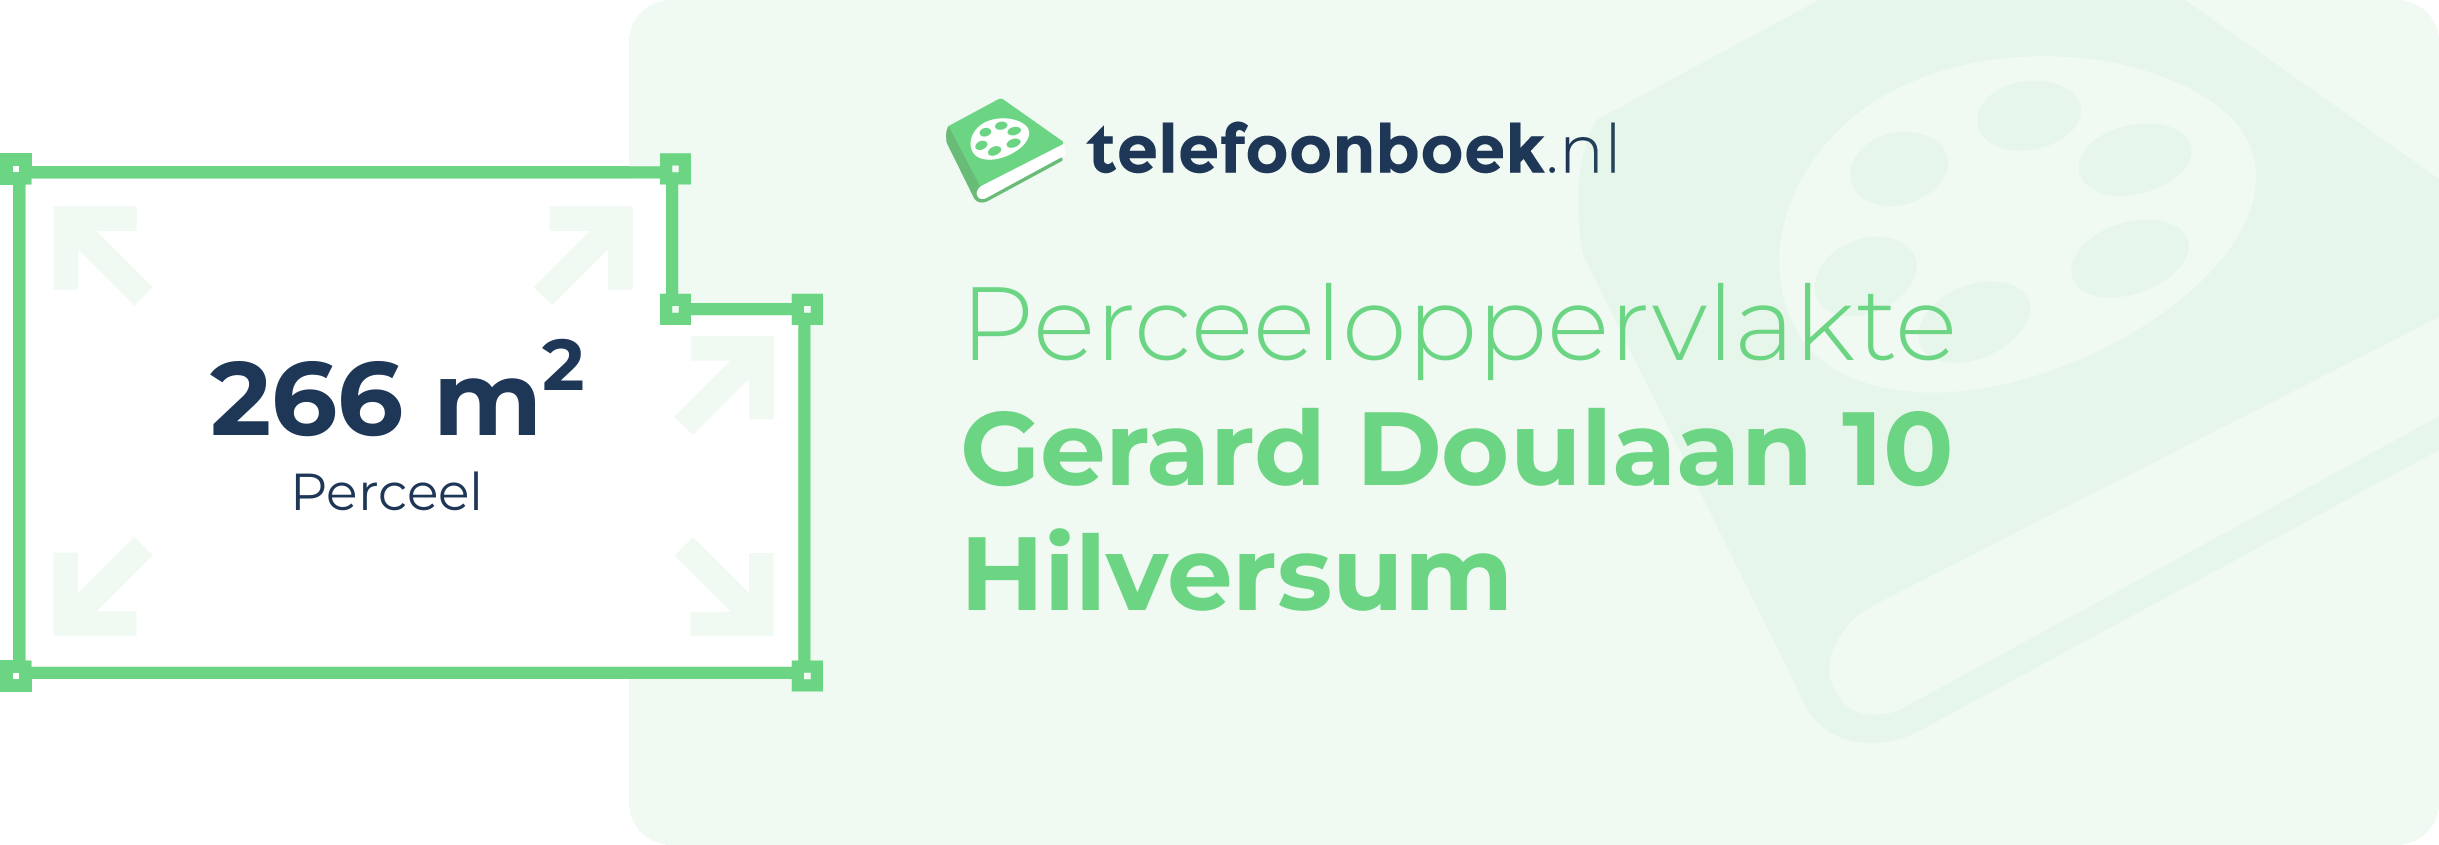 Perceeloppervlakte Gerard Doulaan 10 Hilversum